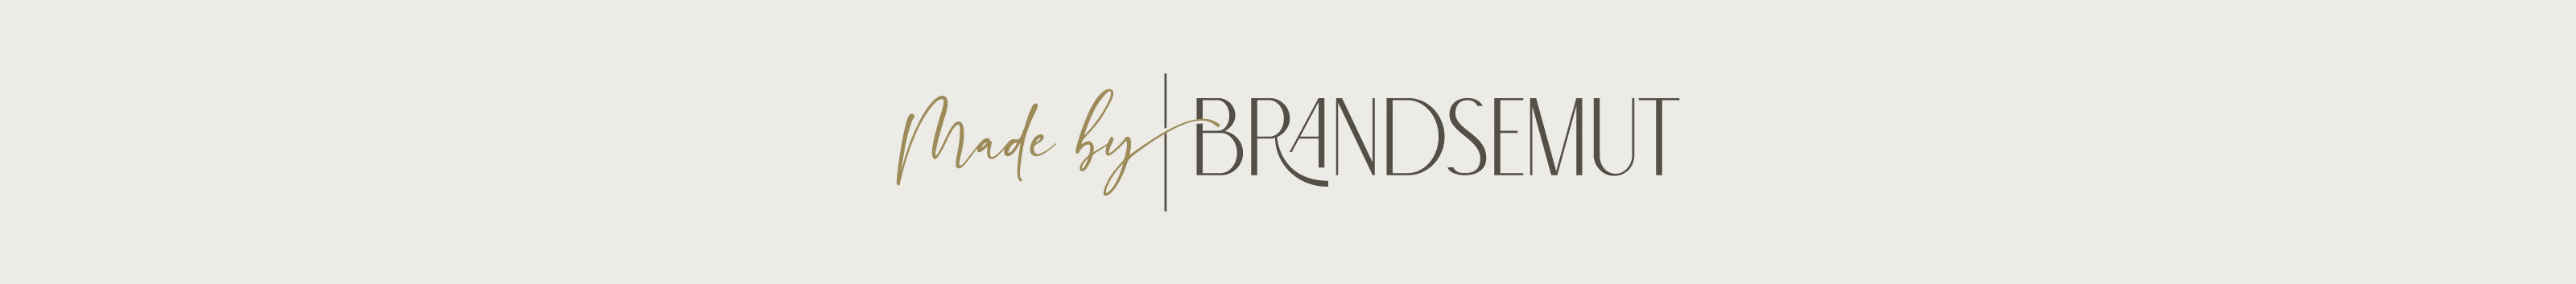 Brandsemut Studio's profile banner